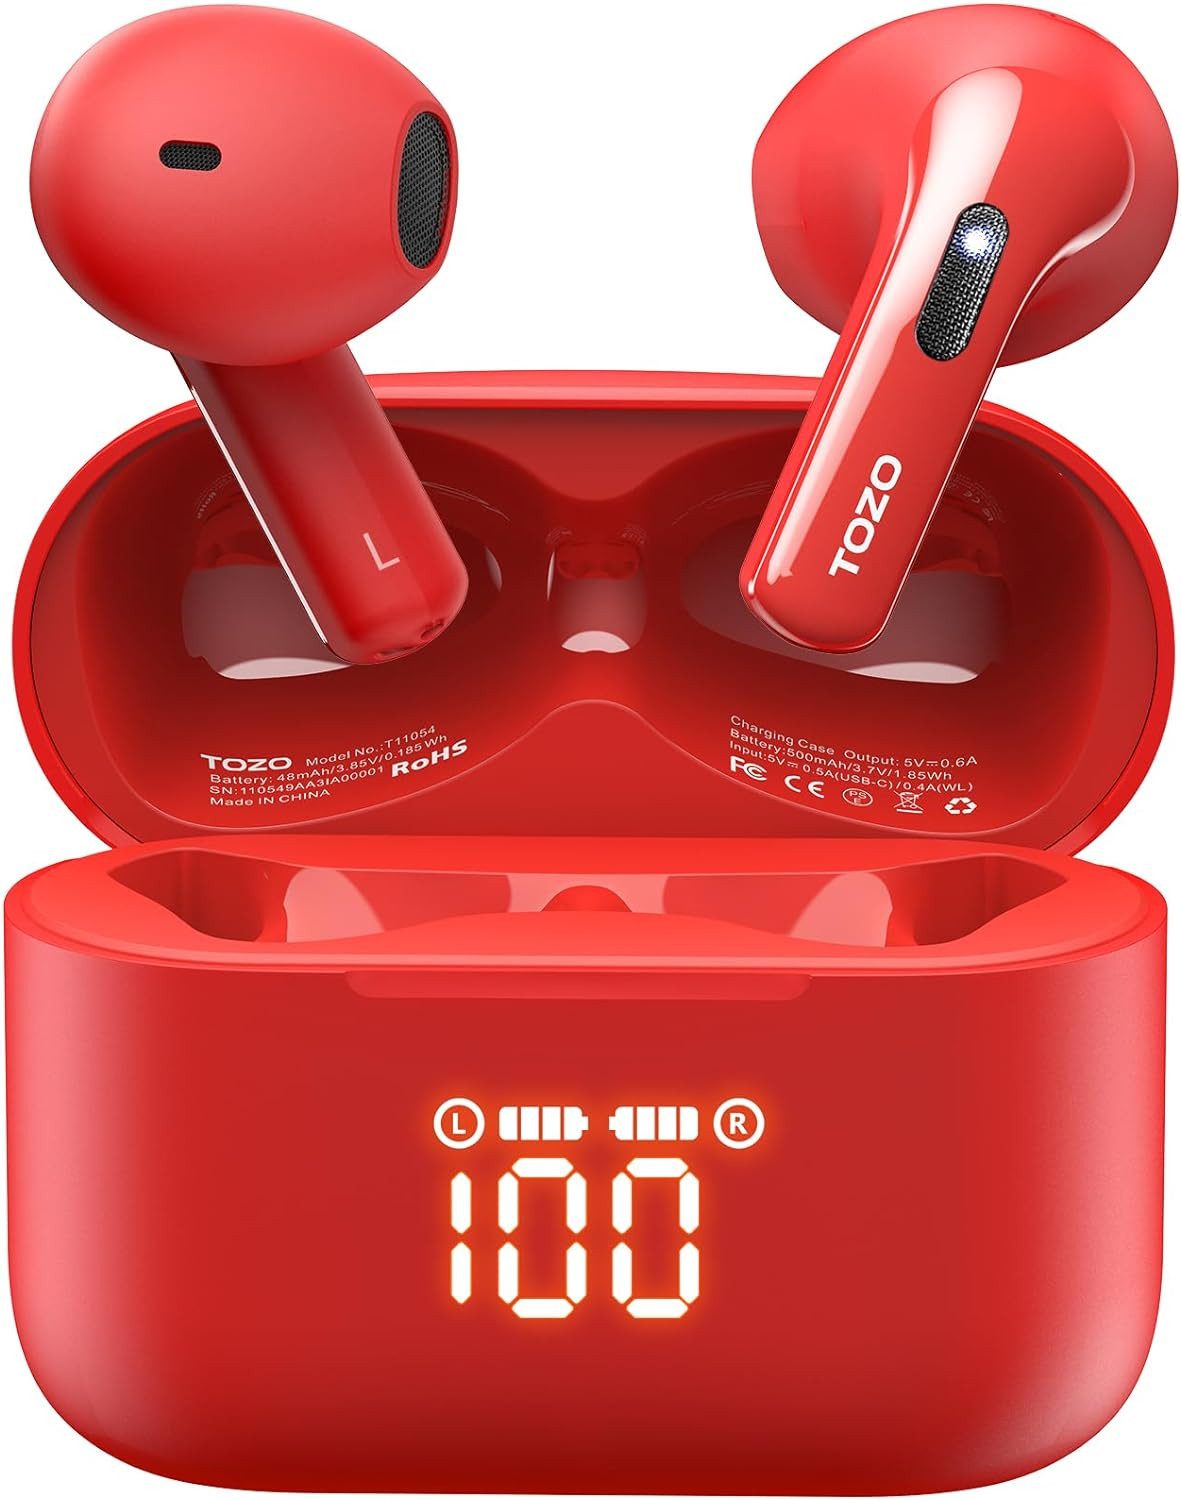 TOZO IPX8 wasserdichtes Design und schweißfeste Nano-Beschichtung In-Ear-Kopfhörer (Bis zu 6 Stunden Wiedergabezeit mit einer Ladung und 44 Stunden mit dem Ladecase; integrierte LED-Anzeige für Batteriestatus., Optimieren Audioerlebnis Dual Mic Noise Cancelling Premium-Funktionen)